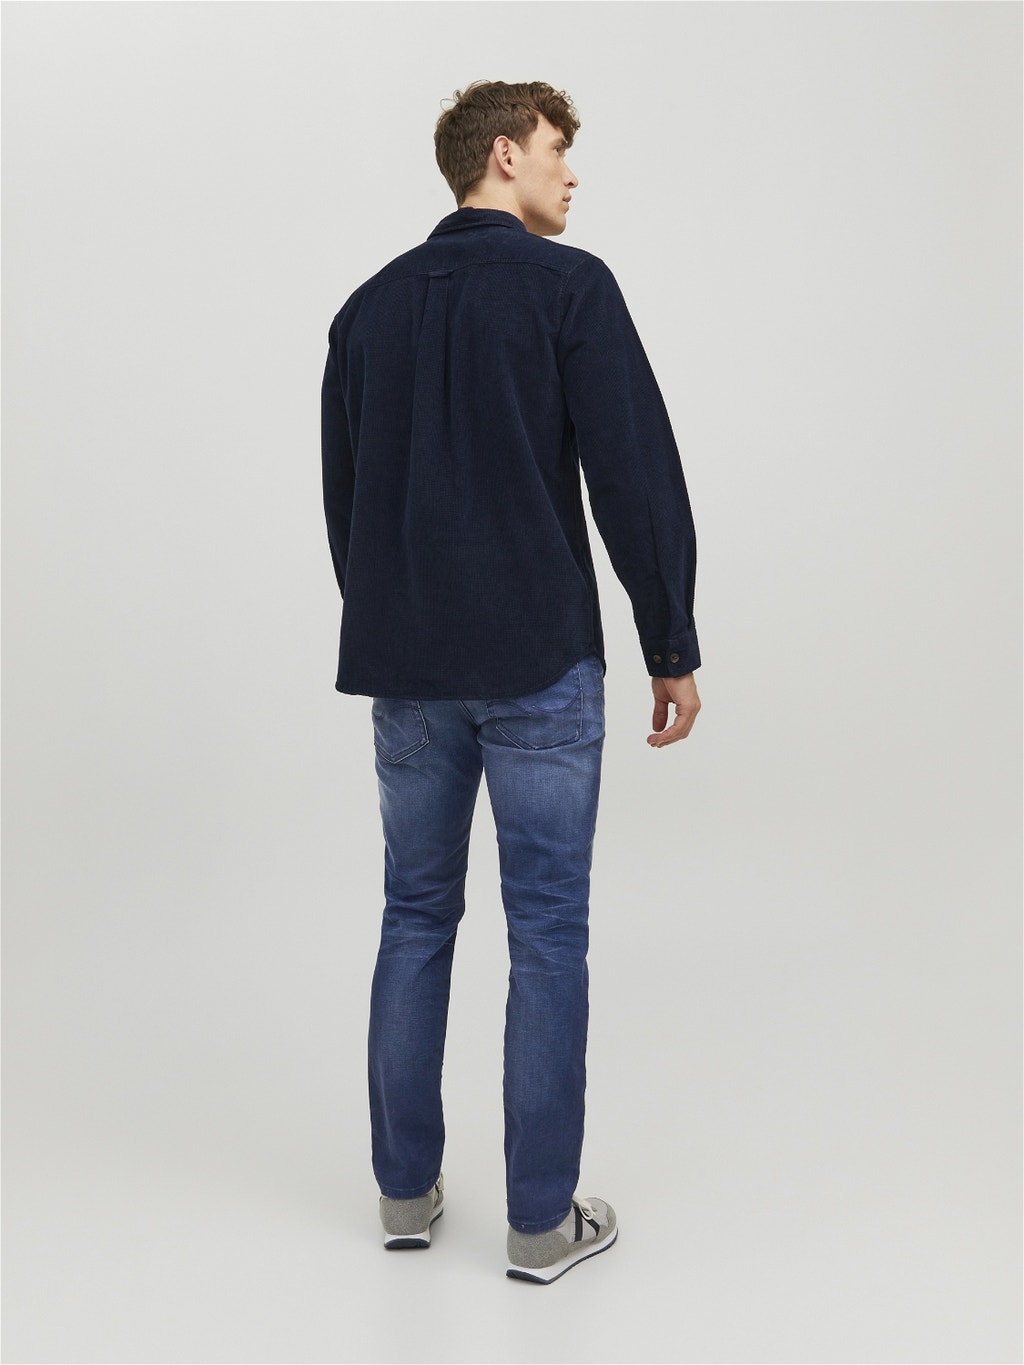 Tim Original JOS 519 Slim/straight fit jeans | Medium Blue | Jack & Jones®